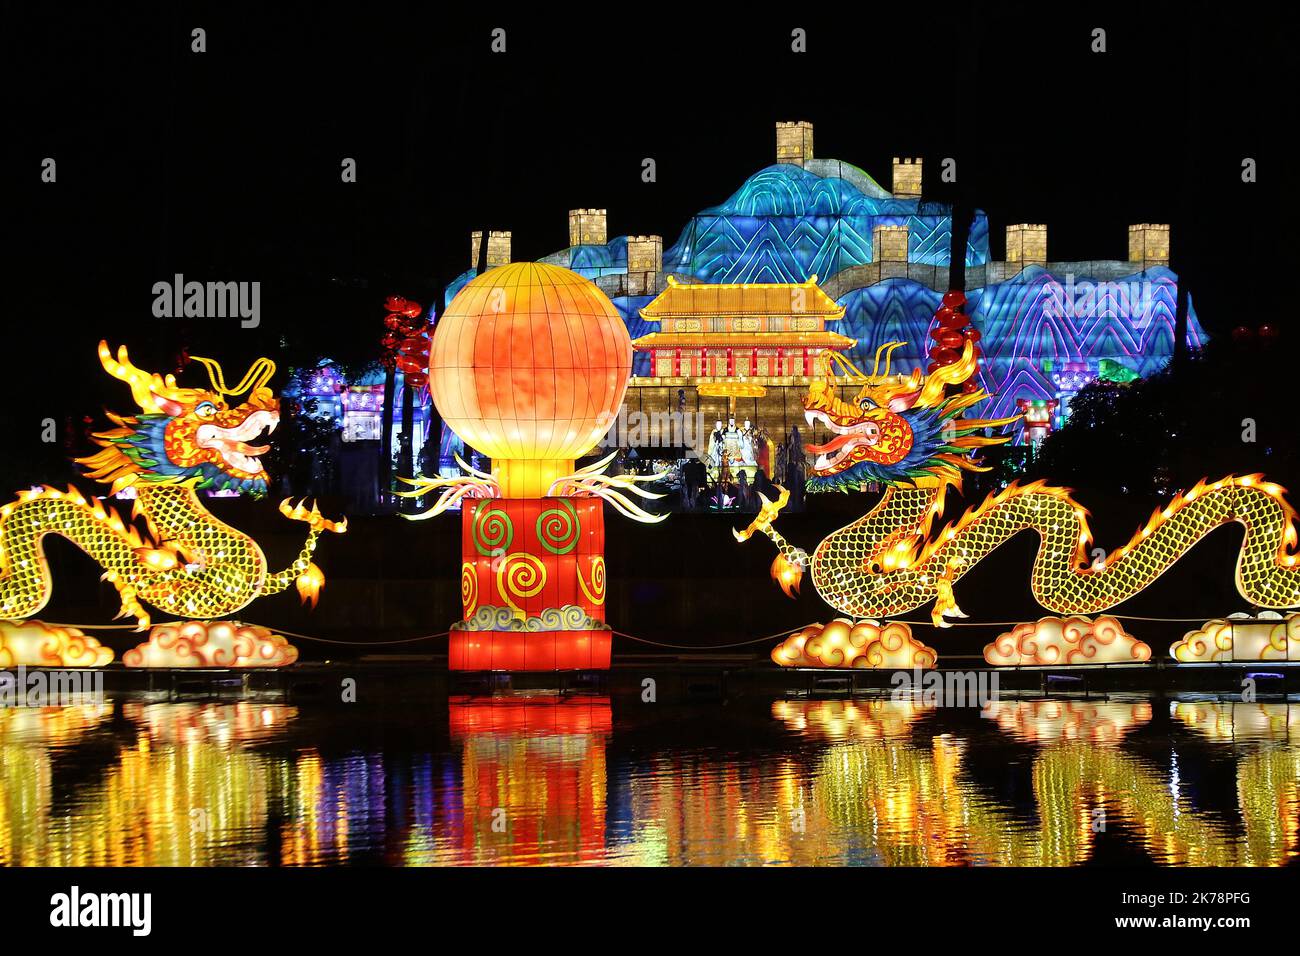 Les lanternes chinoises sont présentées dans le cadre du festival chinois  des lanternes qui se tient à Nice, en France, vendredi 13 décembre 2019  Photo Stock - Alamy